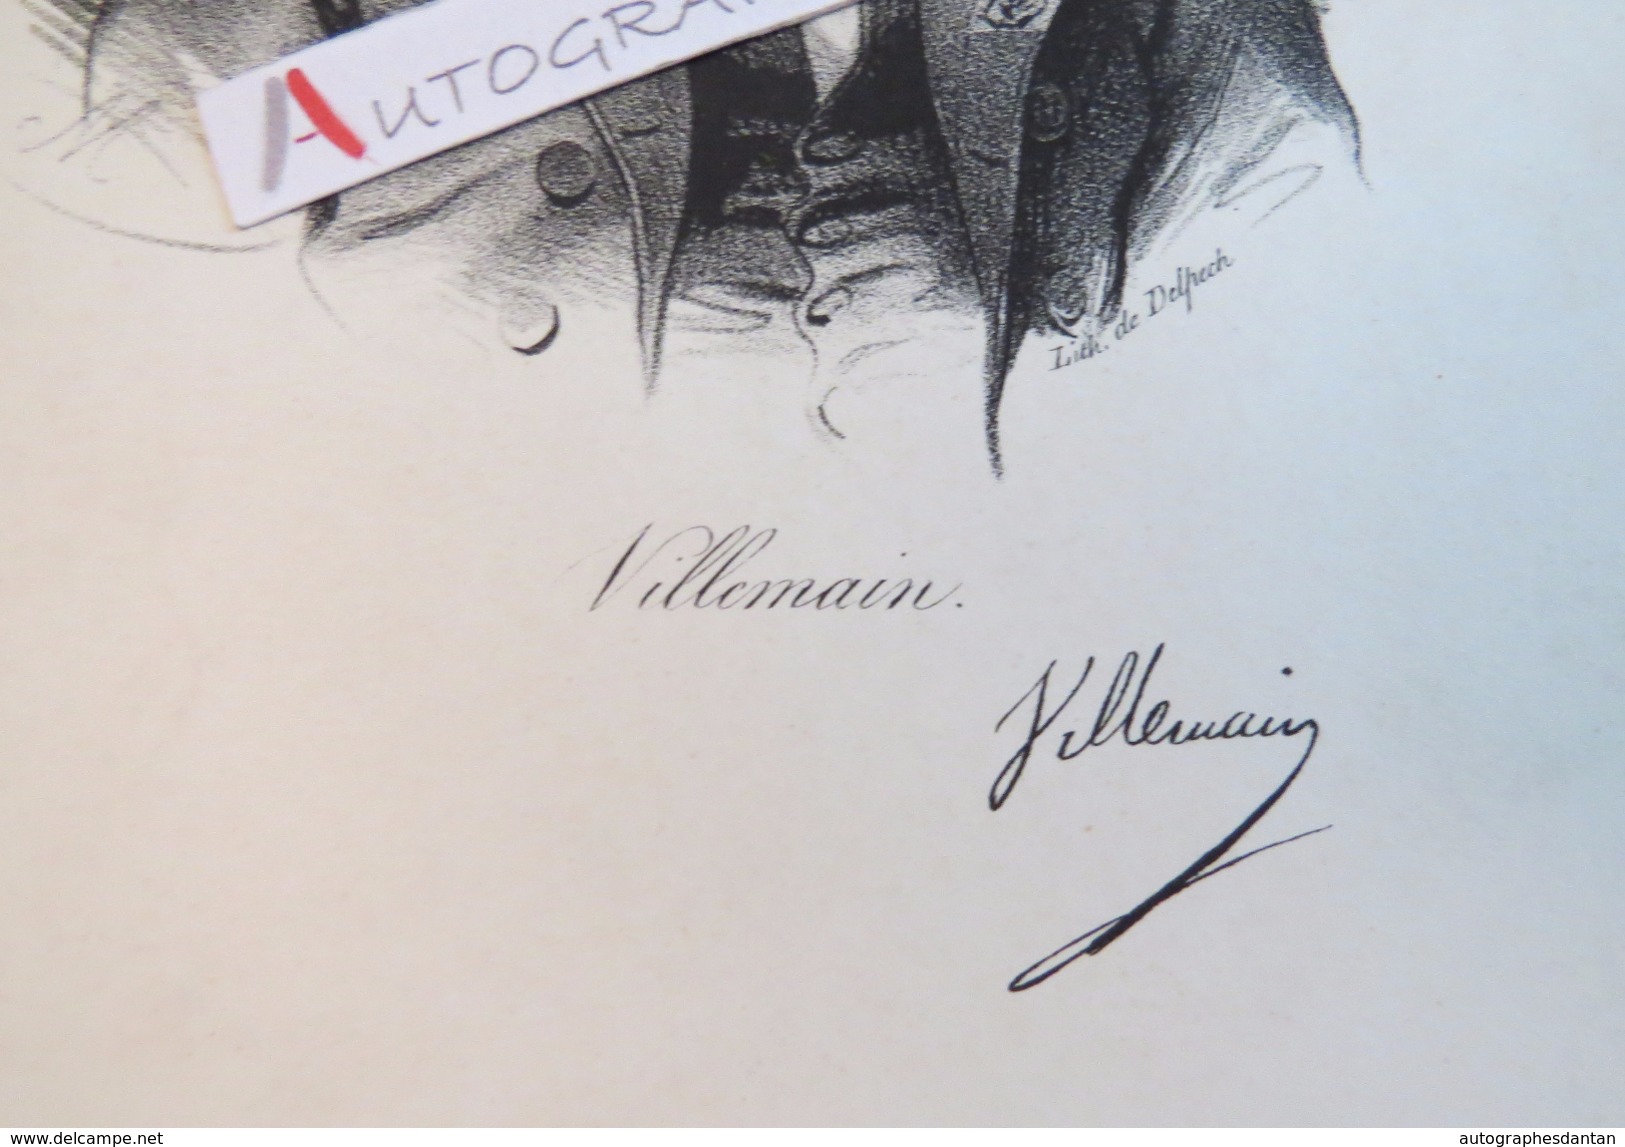 Gravure XIXè - Abel François VILLEMAIN - Ecrivain & Homme Politique - Signature Autographe Imprimée - Delpech - Estampes & Gravures